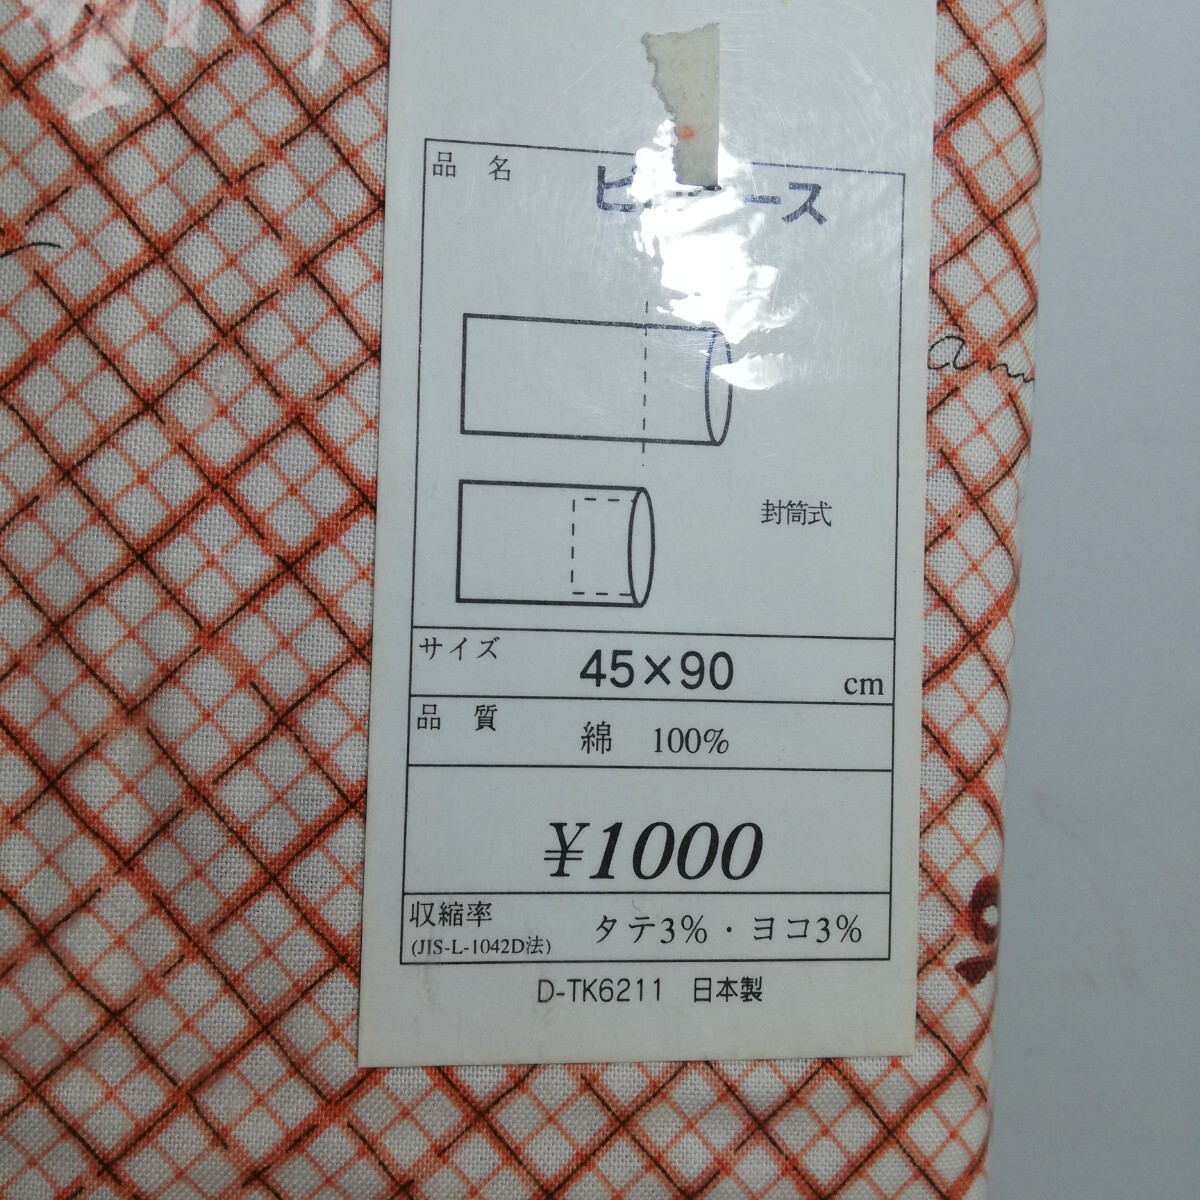 Fabricing リボンクロス柄 ピロケース 枕カバー イエロー・オレンジ 45cm×90cm 2点セット 未使用品 日本製 の画像5